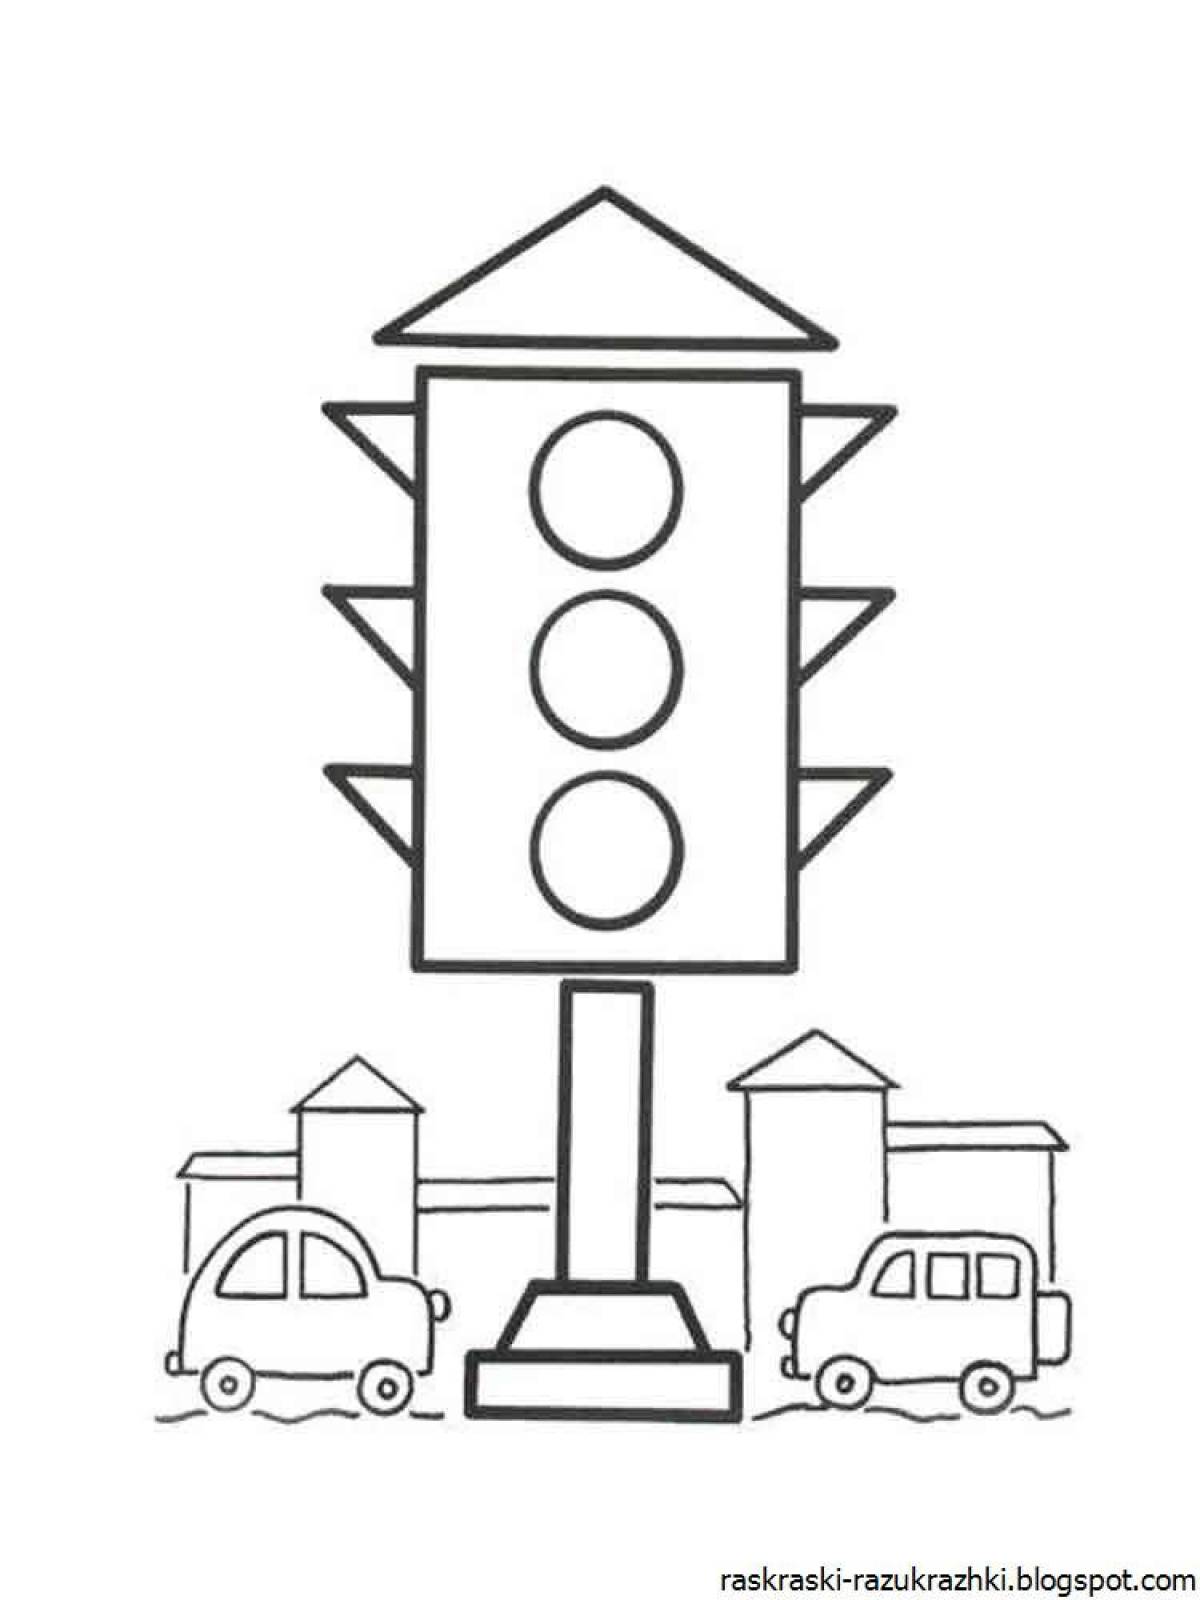 Traffic light for kids #8